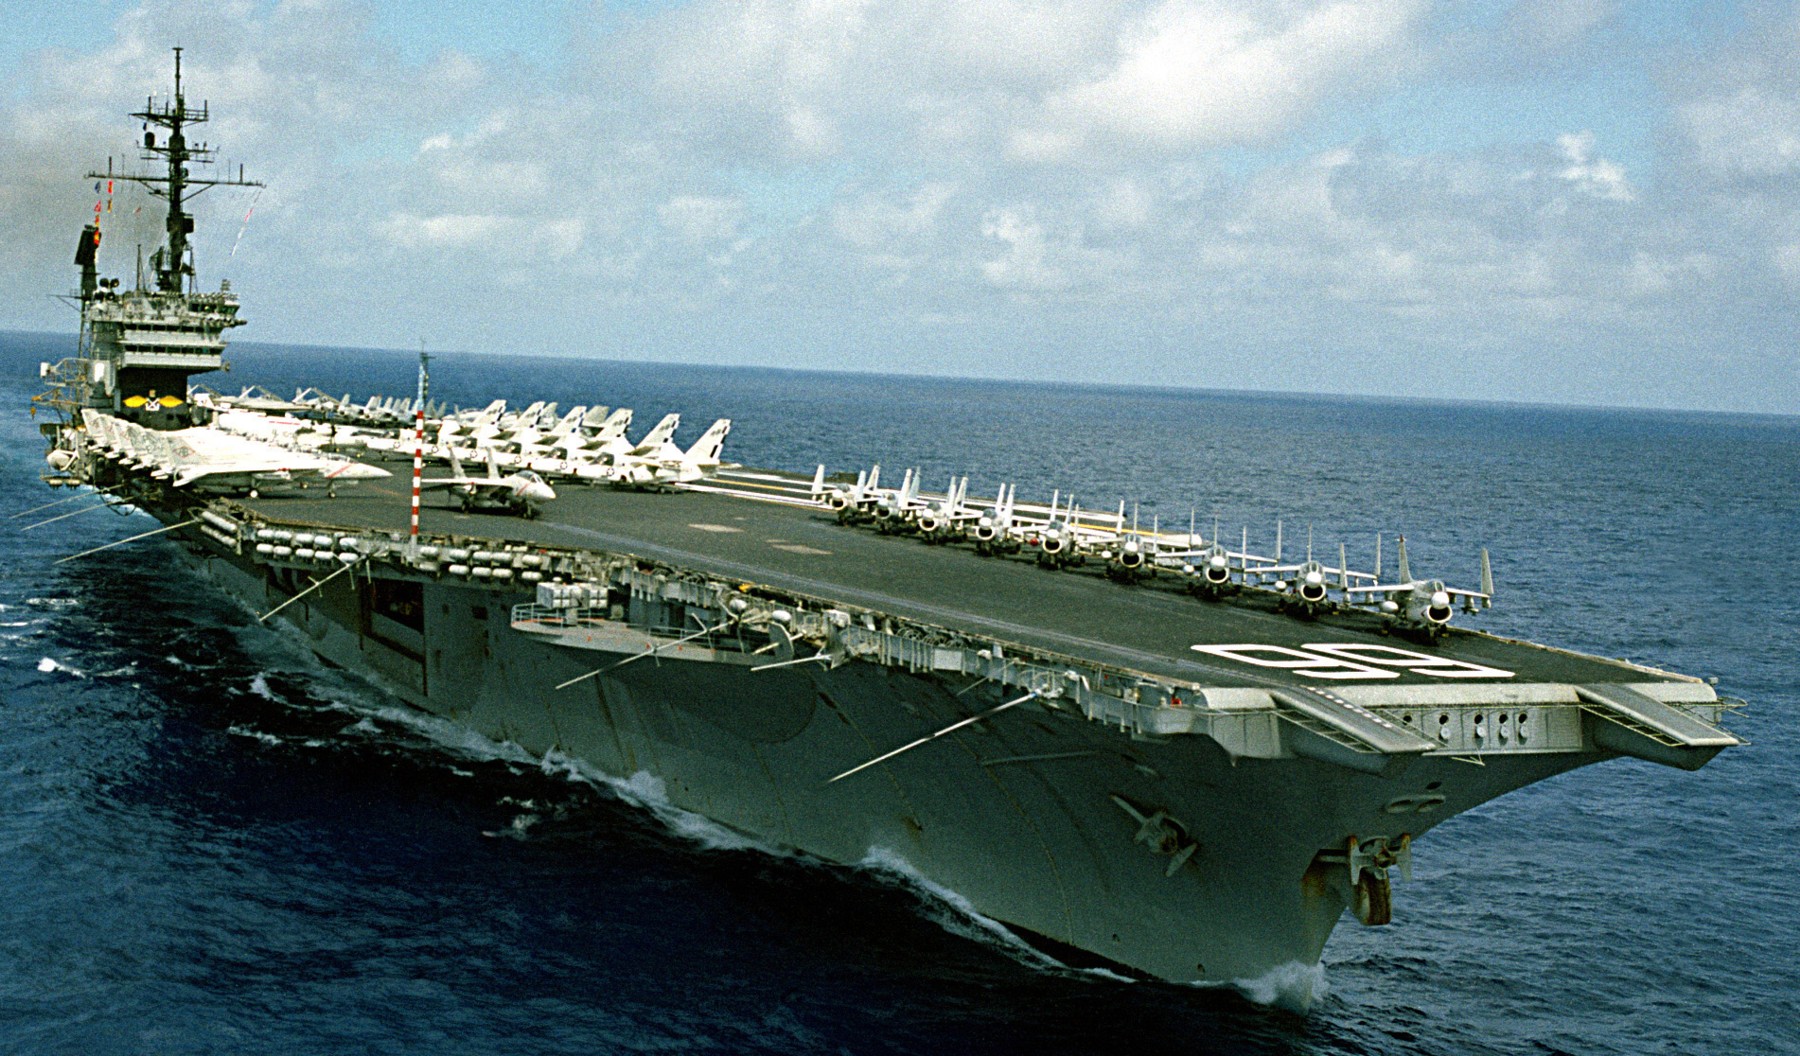 cv-66 uss america kitty hawk class aircraft carrier air wing cvw-1 us navy 59